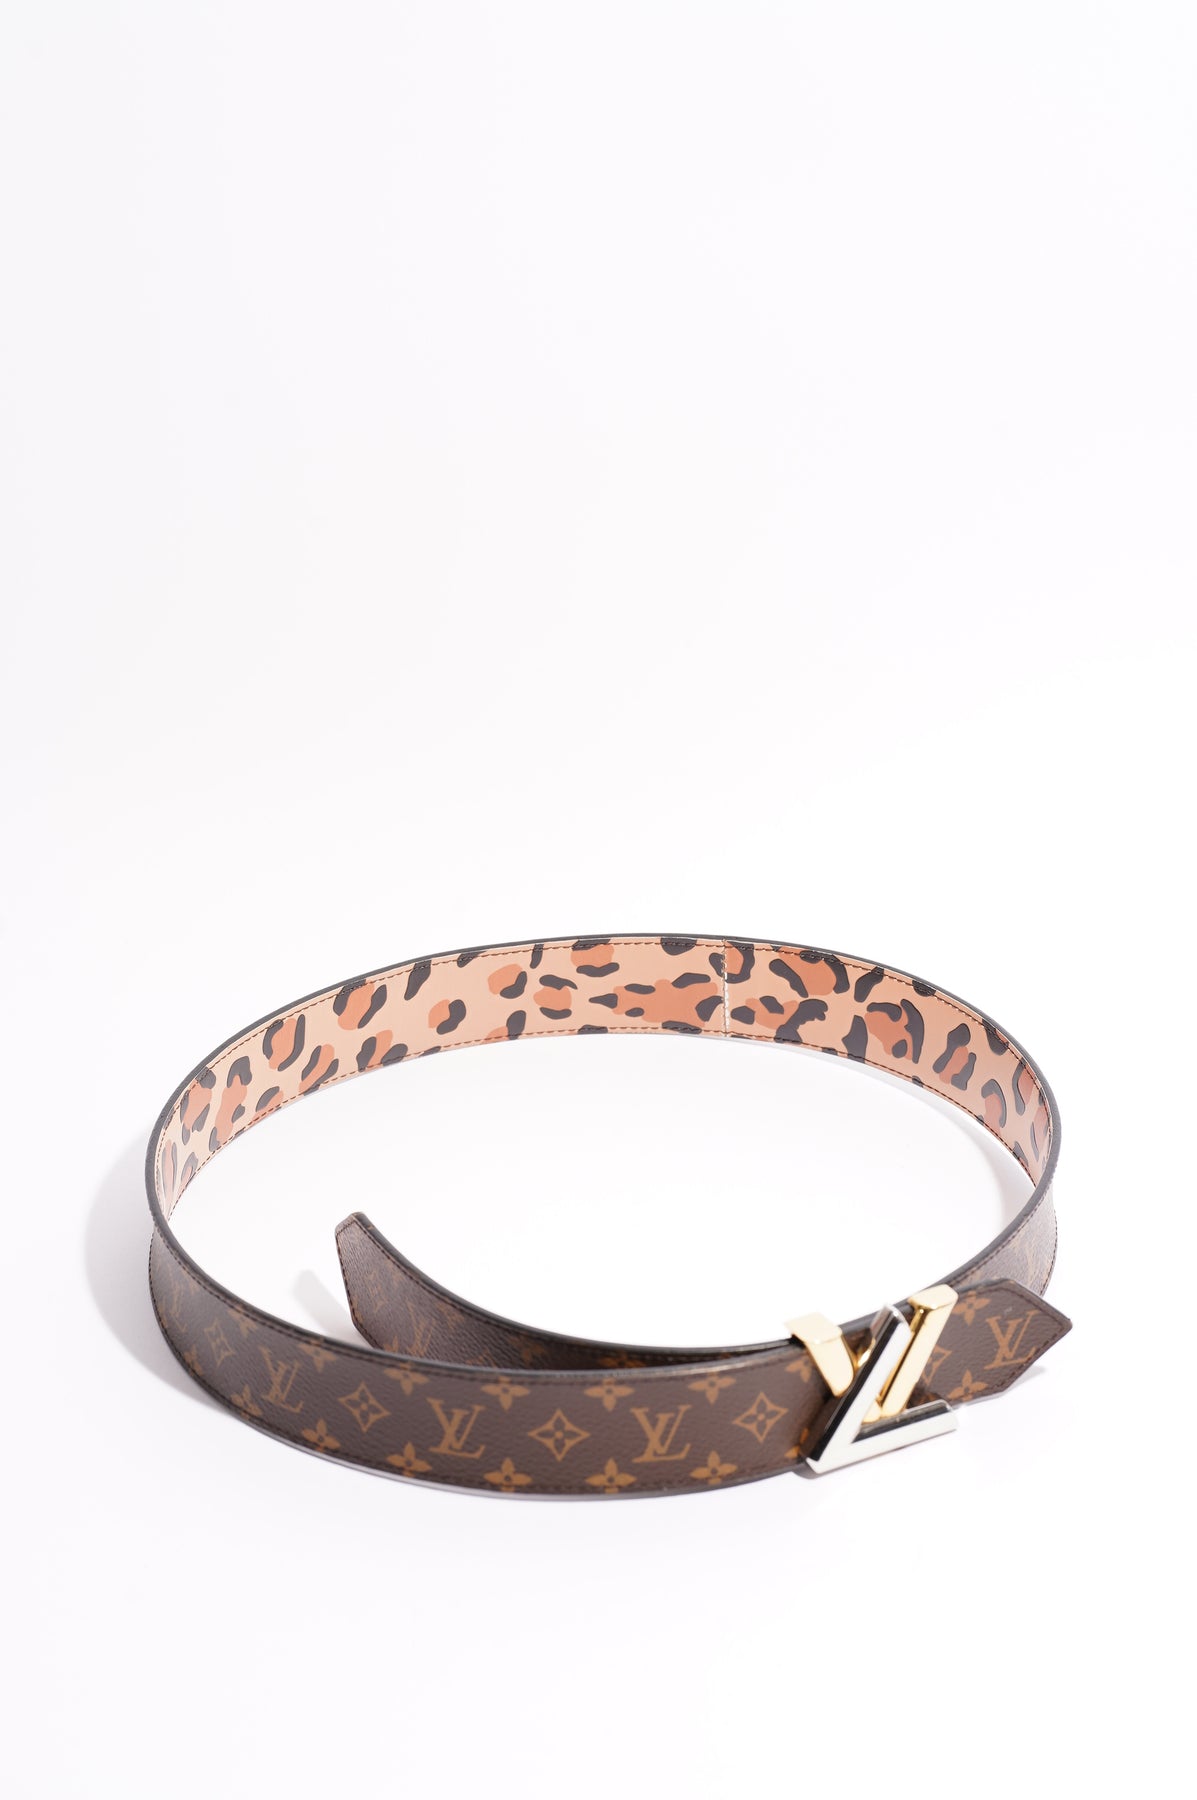 Louis Vuitton belt “Essential V reversible” Women's